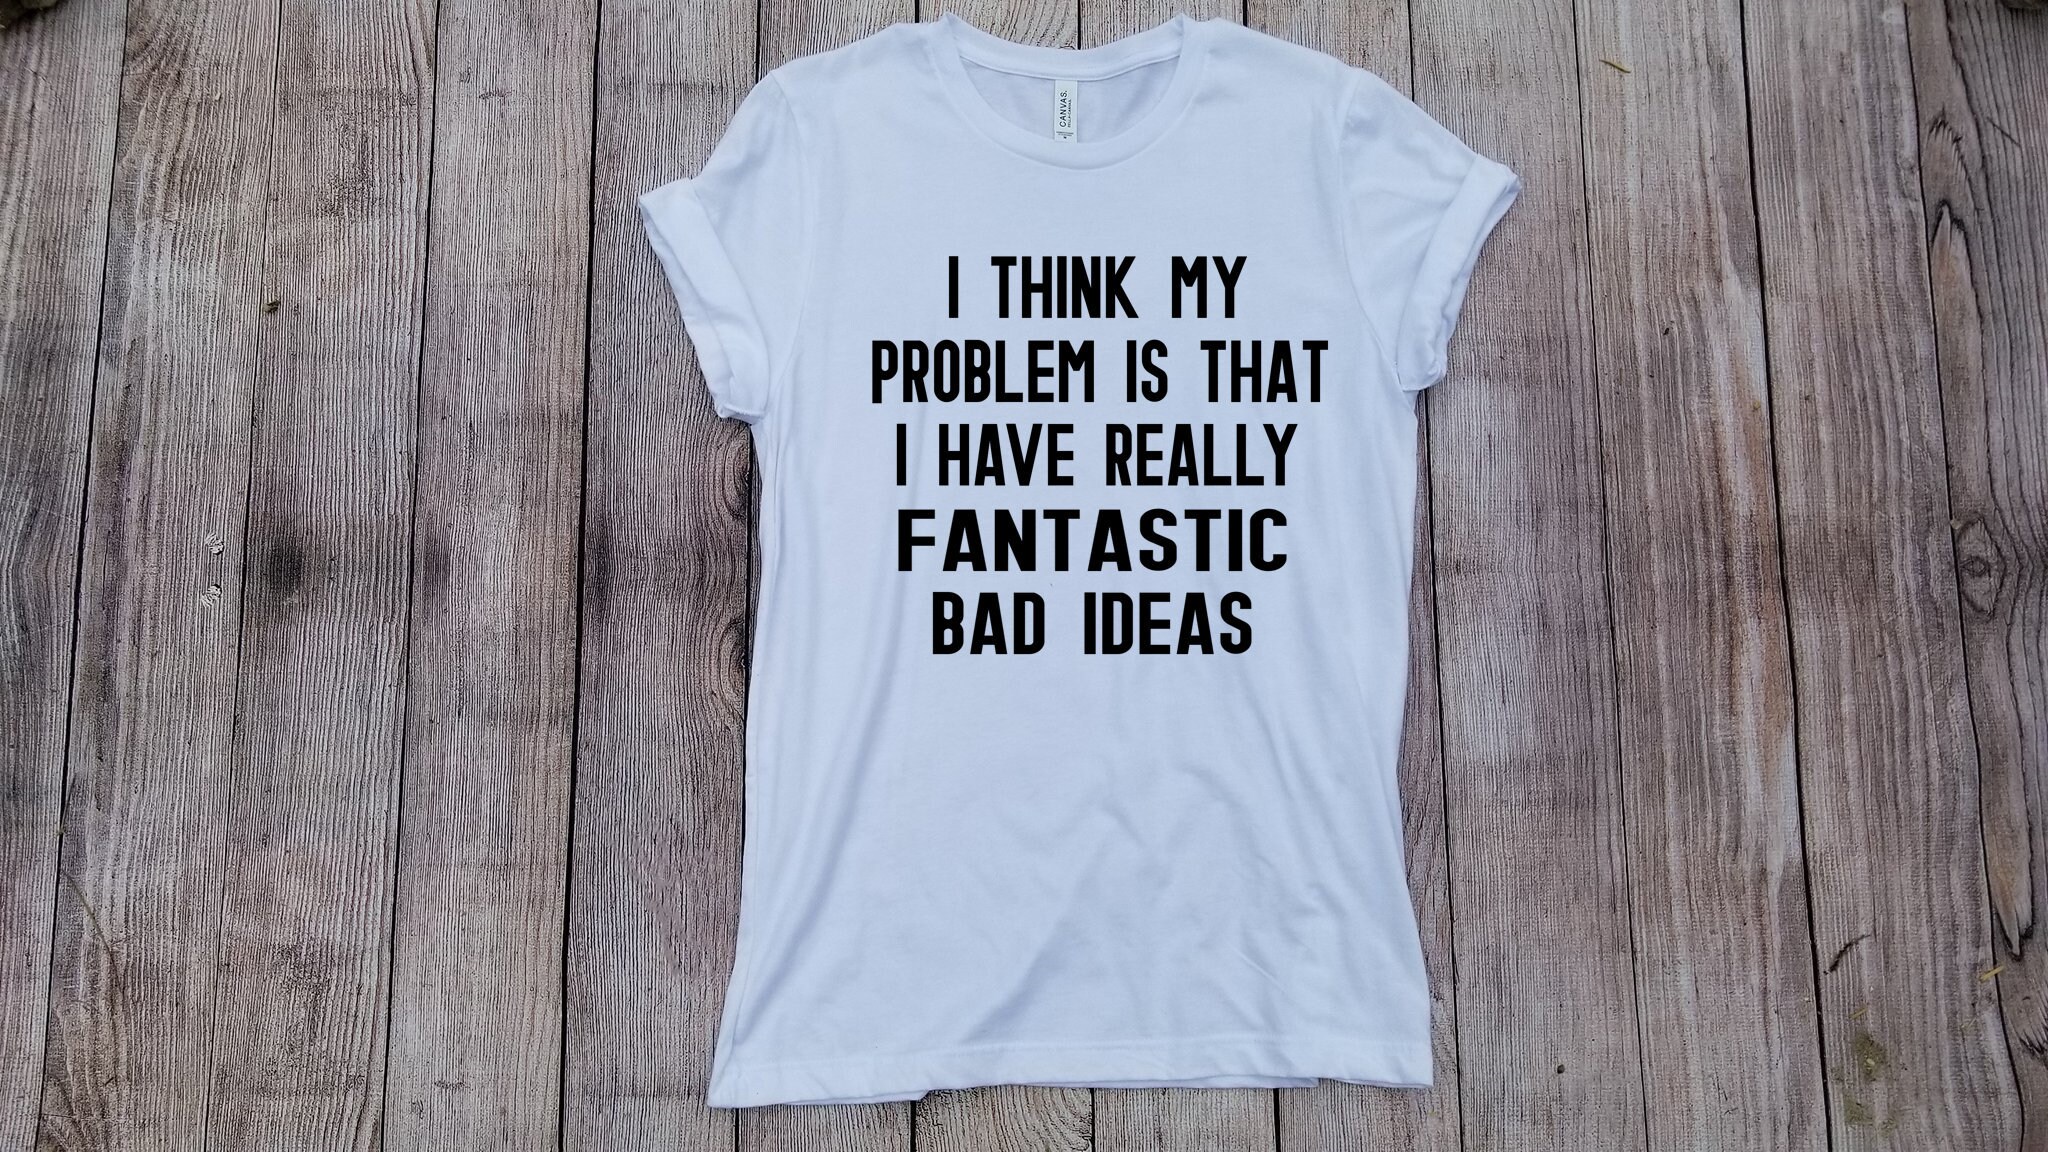 Funny T Shirts Adelaide Buyudum Cocuk Oldum - meme shirts roblox buyudum cocuk oldum